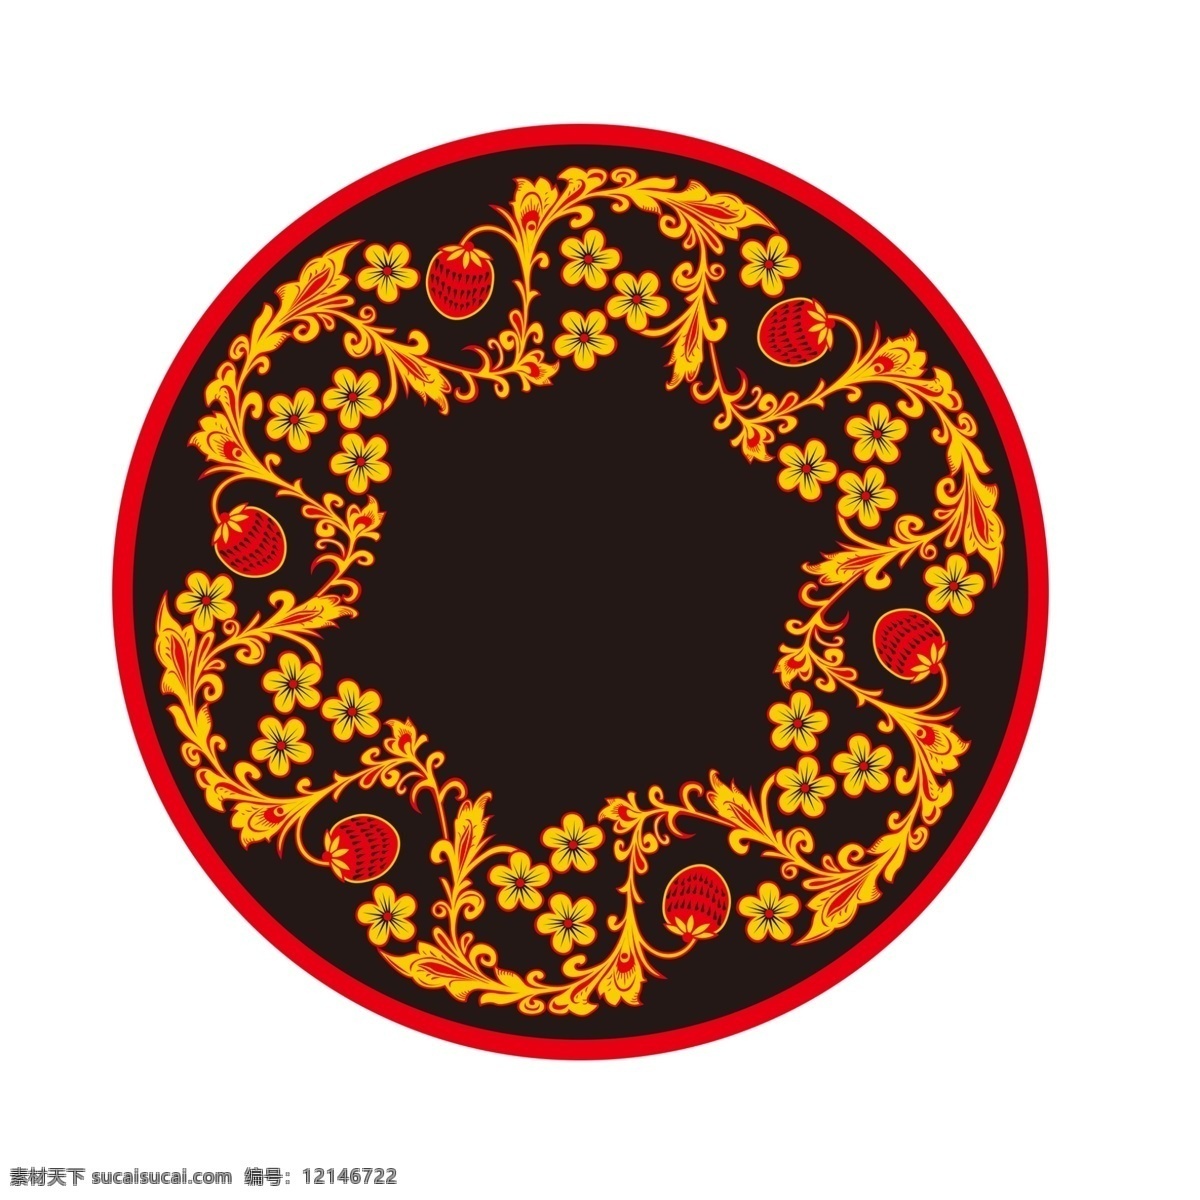 圆形花纹5 圆形花纹 圆 环绕 传统花纹 底纹 花